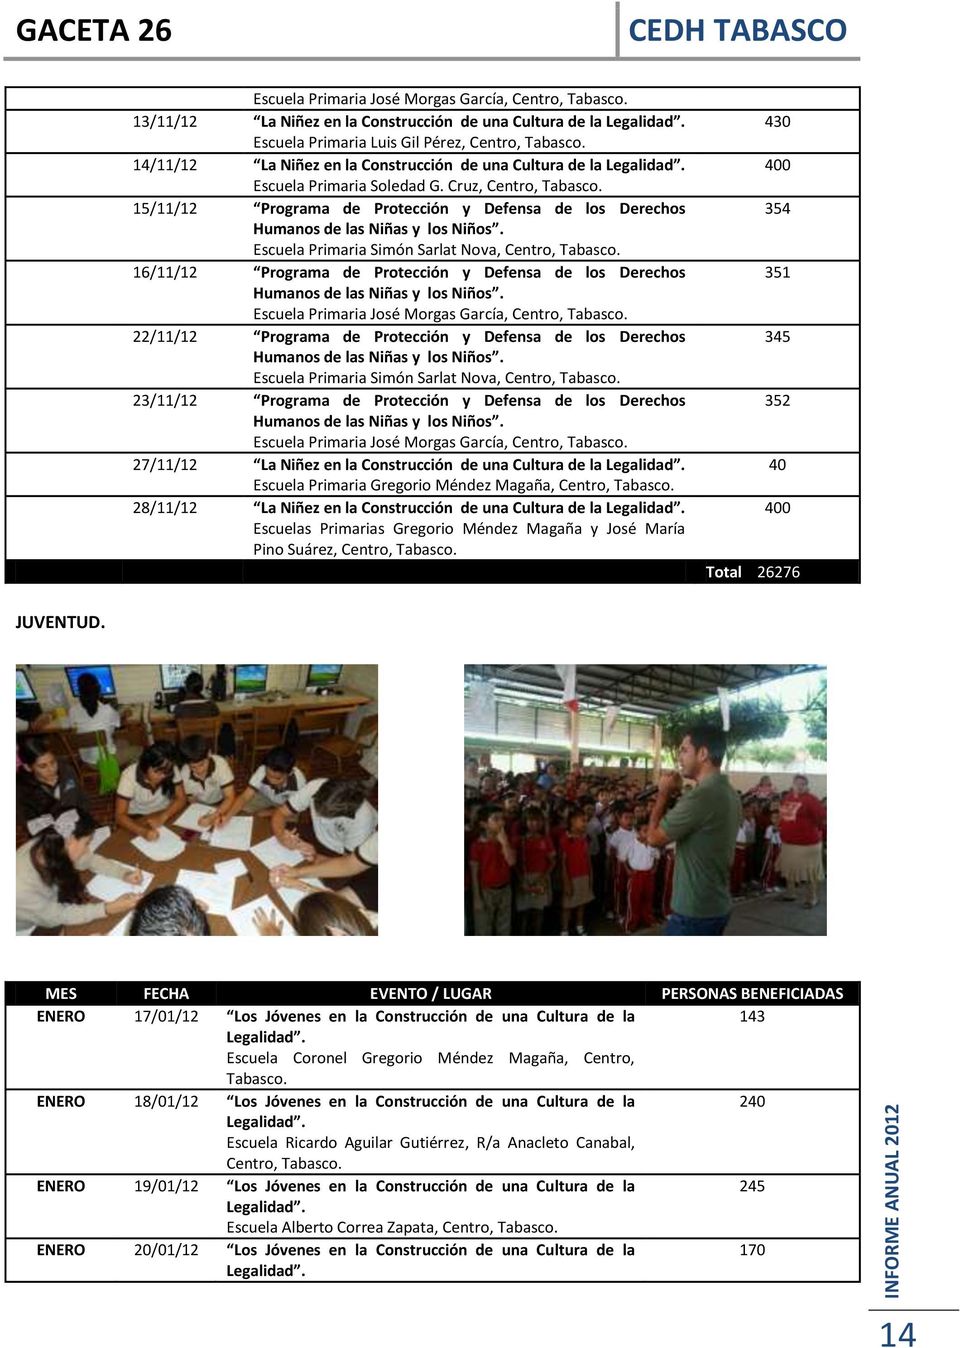 15/11/12 Programa de Protección y Defensa de los Derechos Humanos de las Niñas y los Niños. Escuela Primaria Simón Sarlat Nova, Centro, Tabasco.